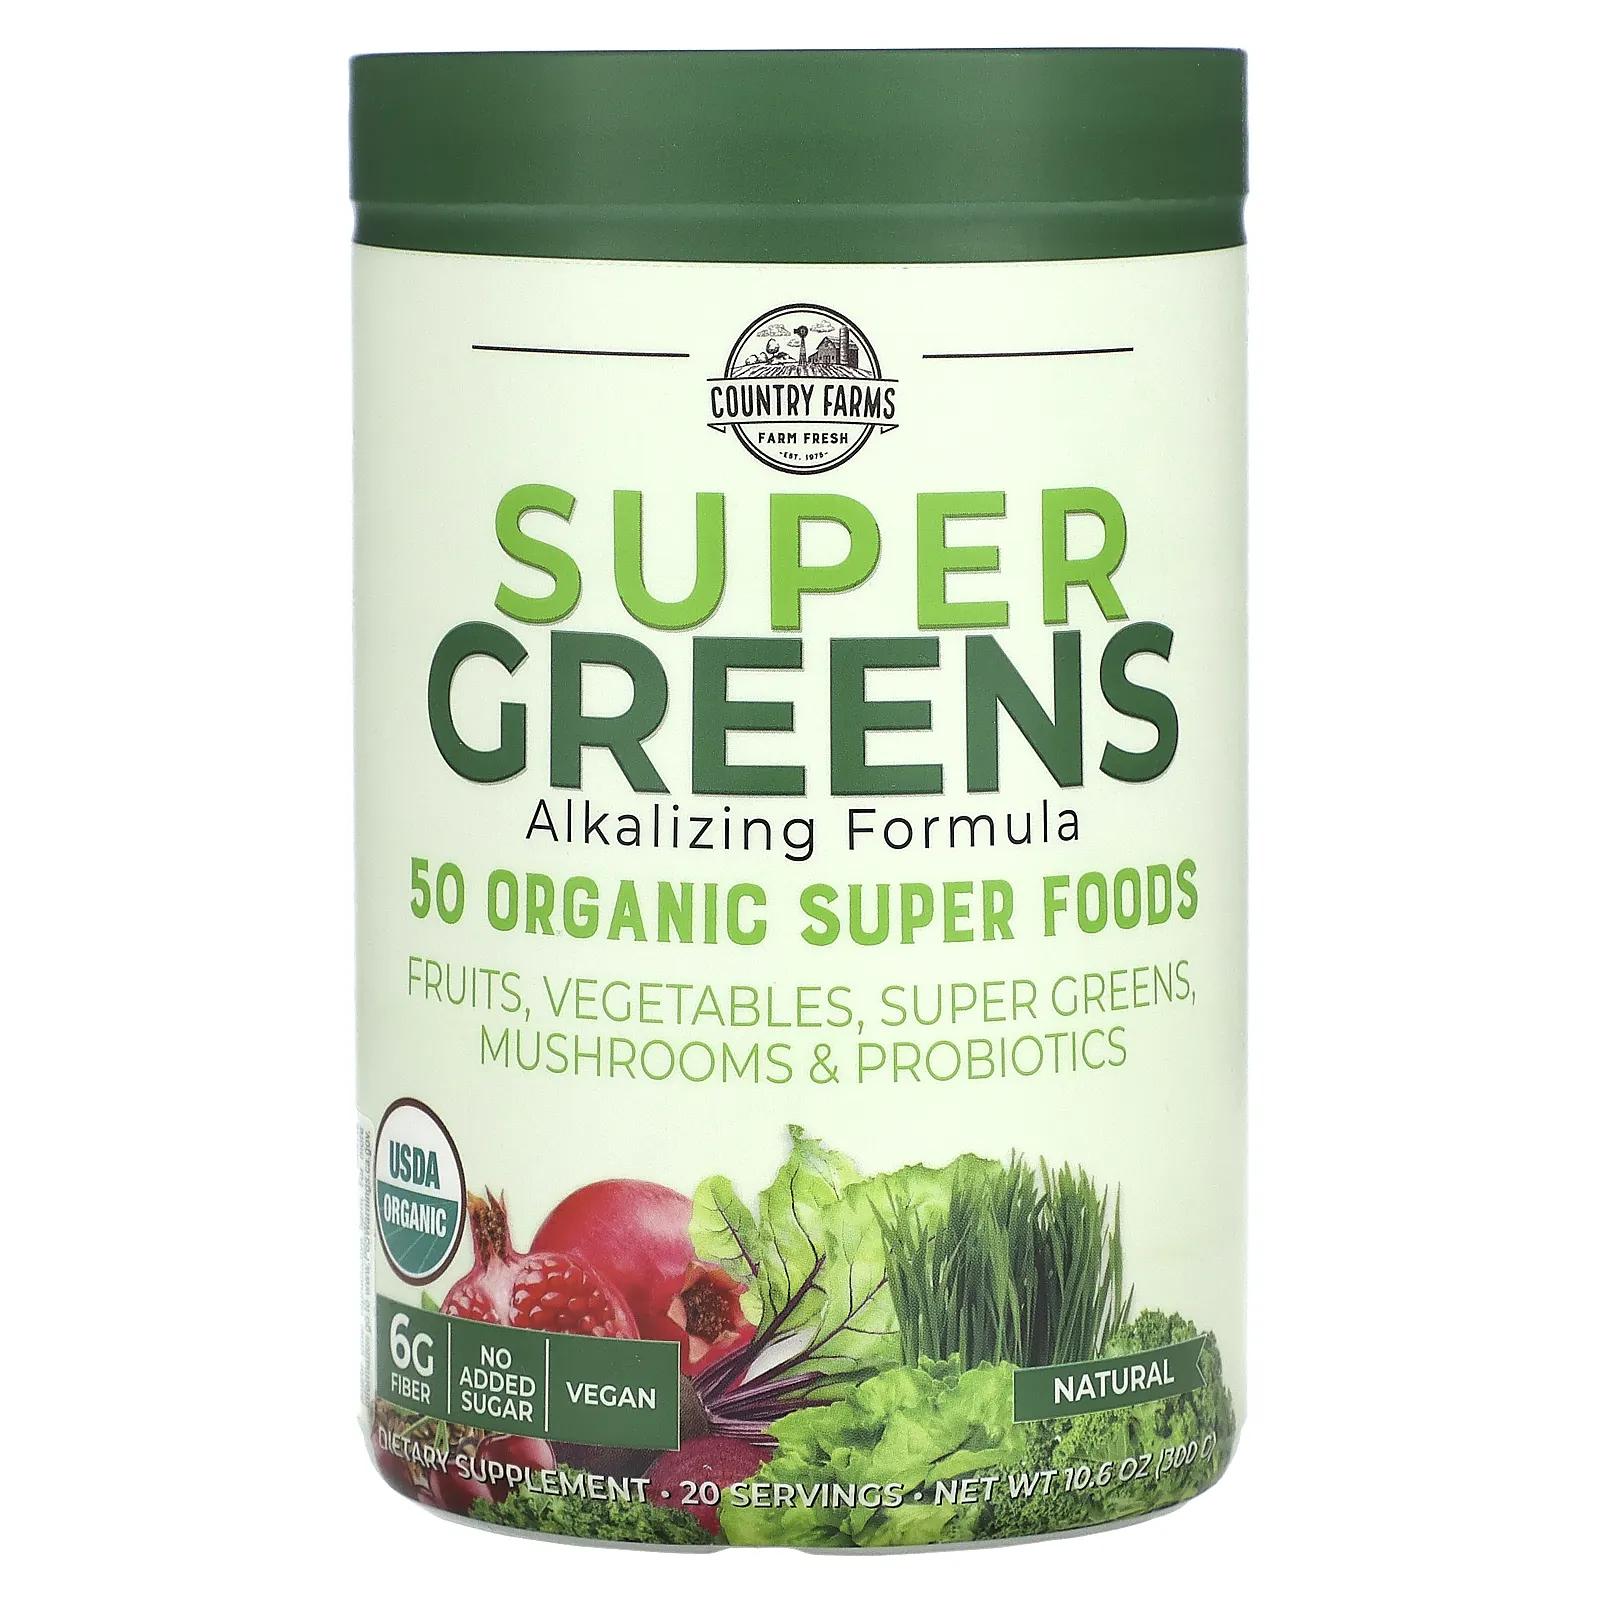 Country Farms Super Greens сертифицированная органическая формула из цельных продуктов яркий натуральный вкус 10,6 унц. (300 г) country farms super greens формула с подщелачивающими травами с нейтральным вкусом 300 г 10 6 унции